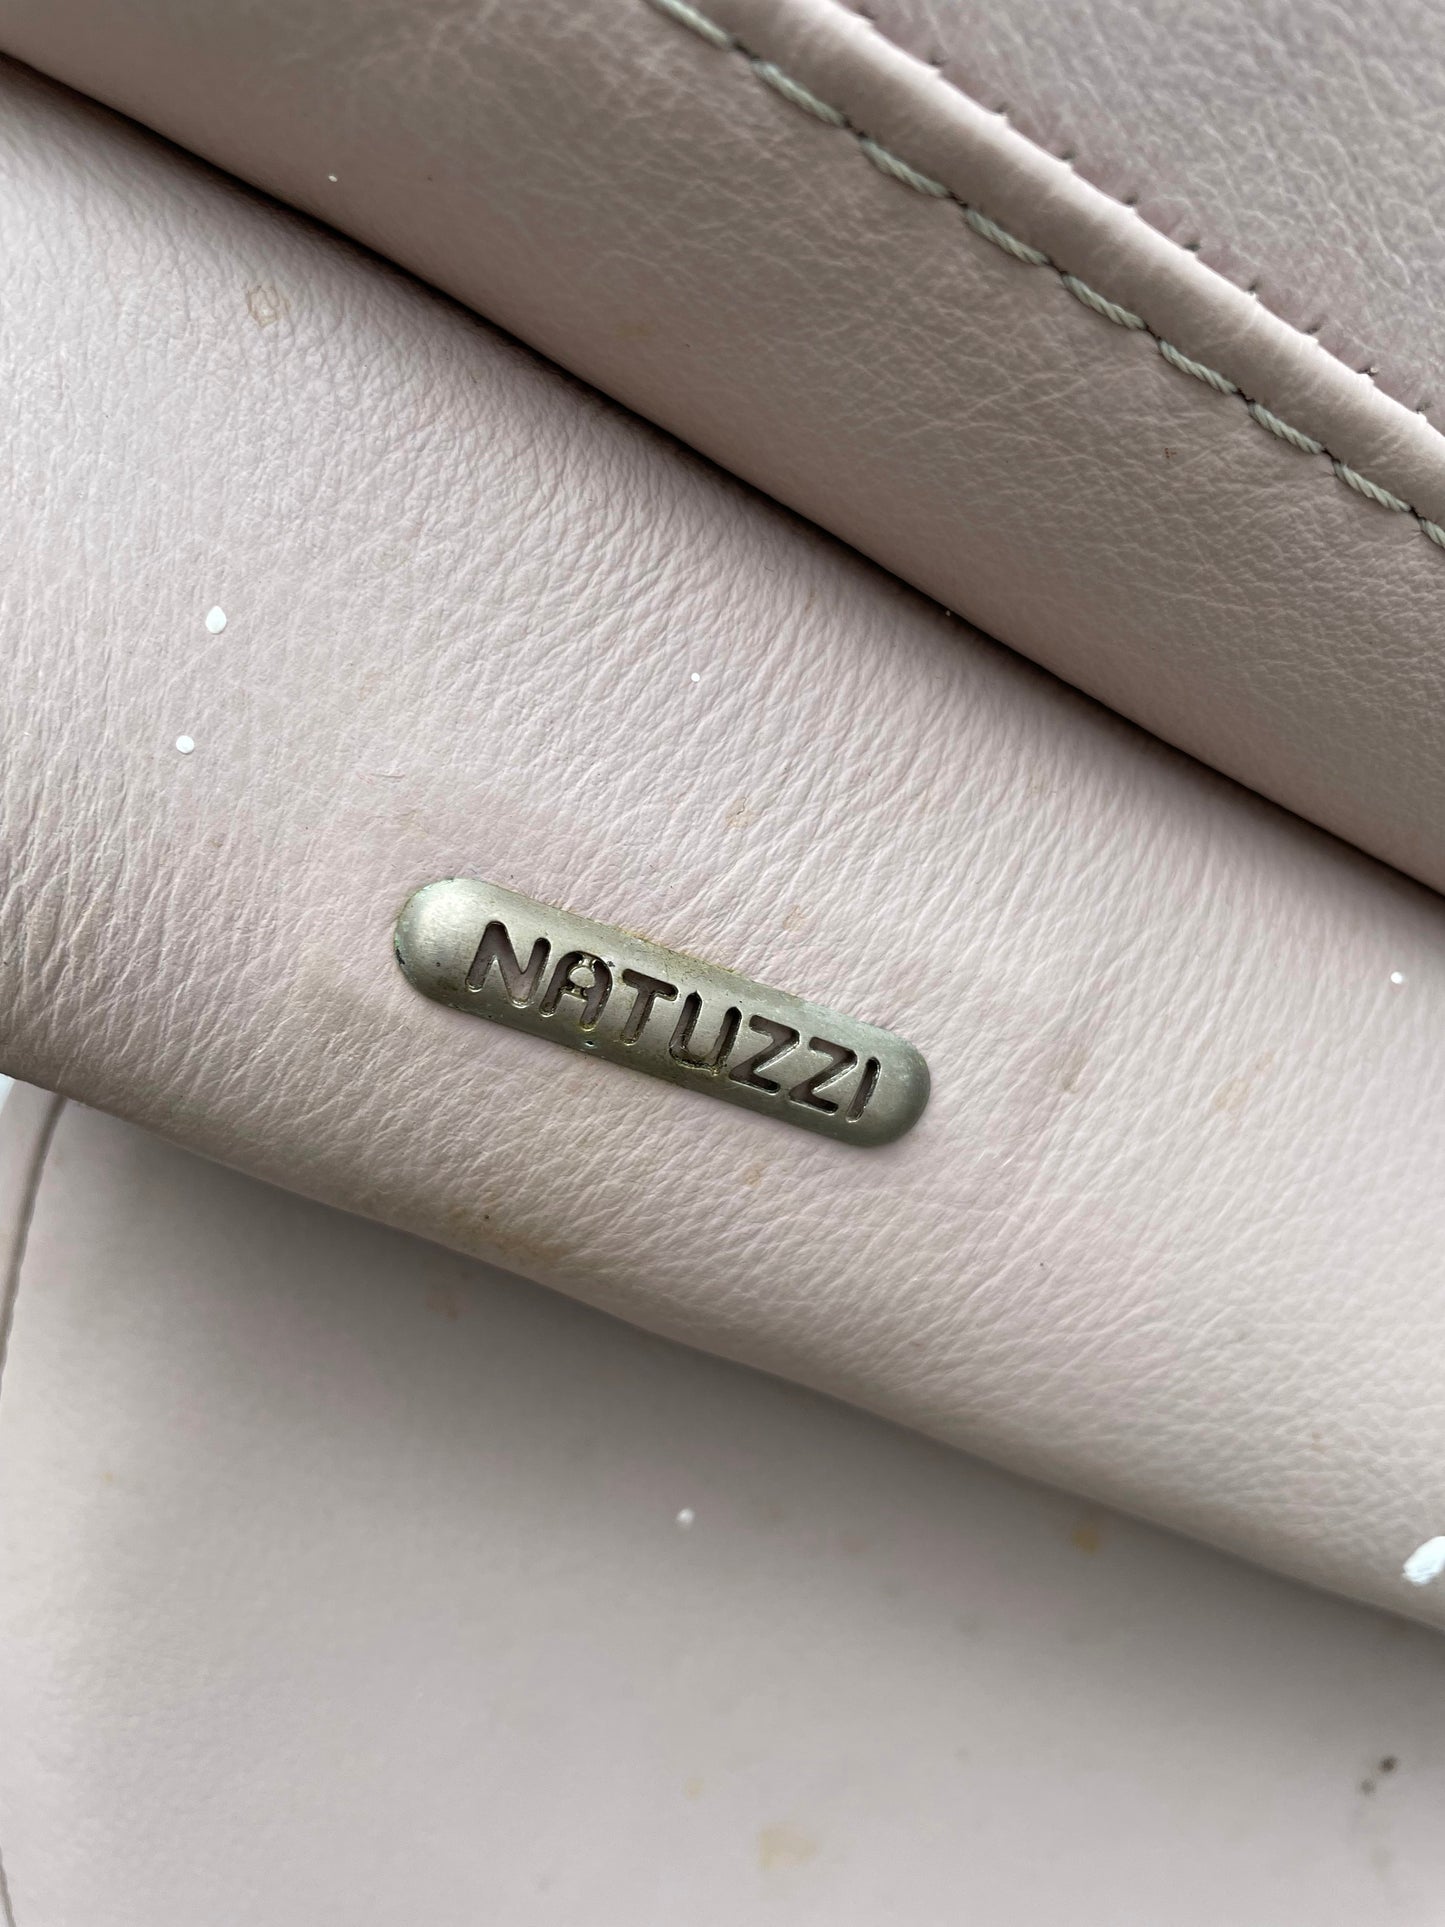 Pink Leather Italian Love Seat By Natuzzi